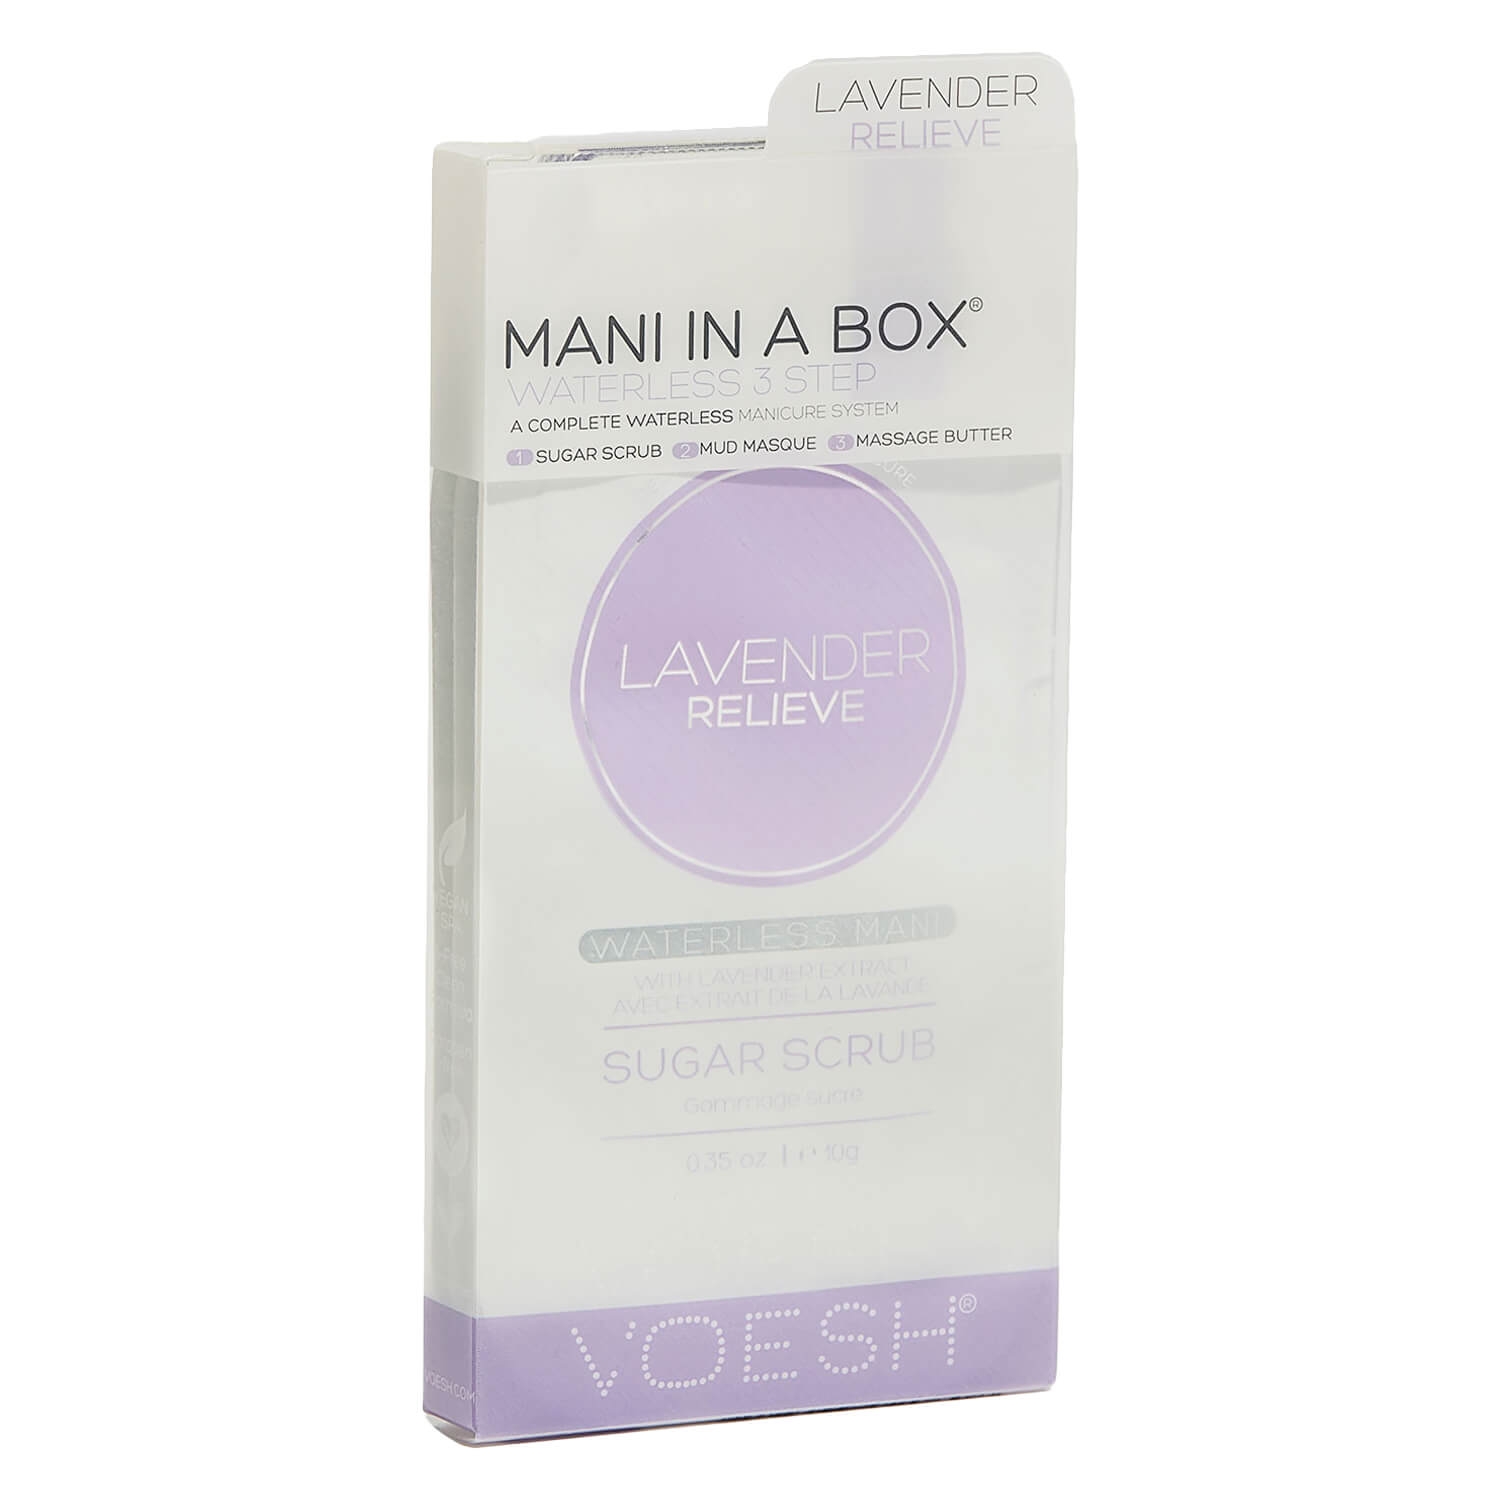 Produktbild von VOESH New York - Mani In A Box 3 Step Lavender